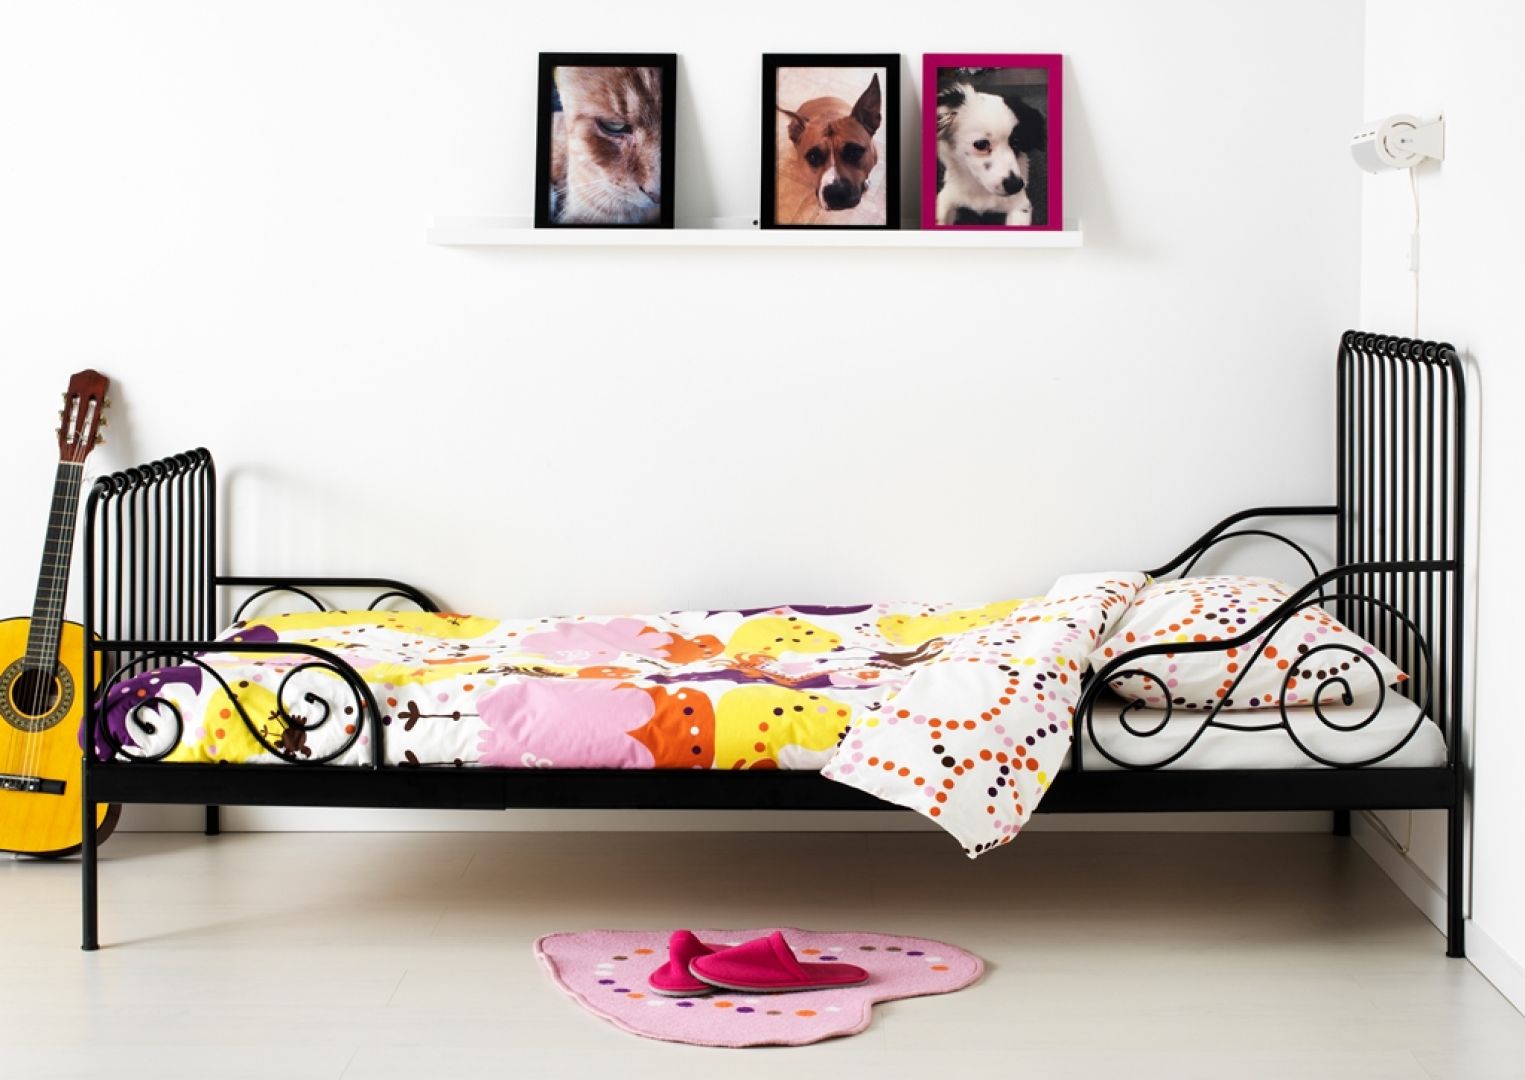 Łóżko MINNEN posiada regulowaną długość ramy. Dostosowuje się do wieku dziecka. Cena łóżka 349 zł. Fot. IKEA